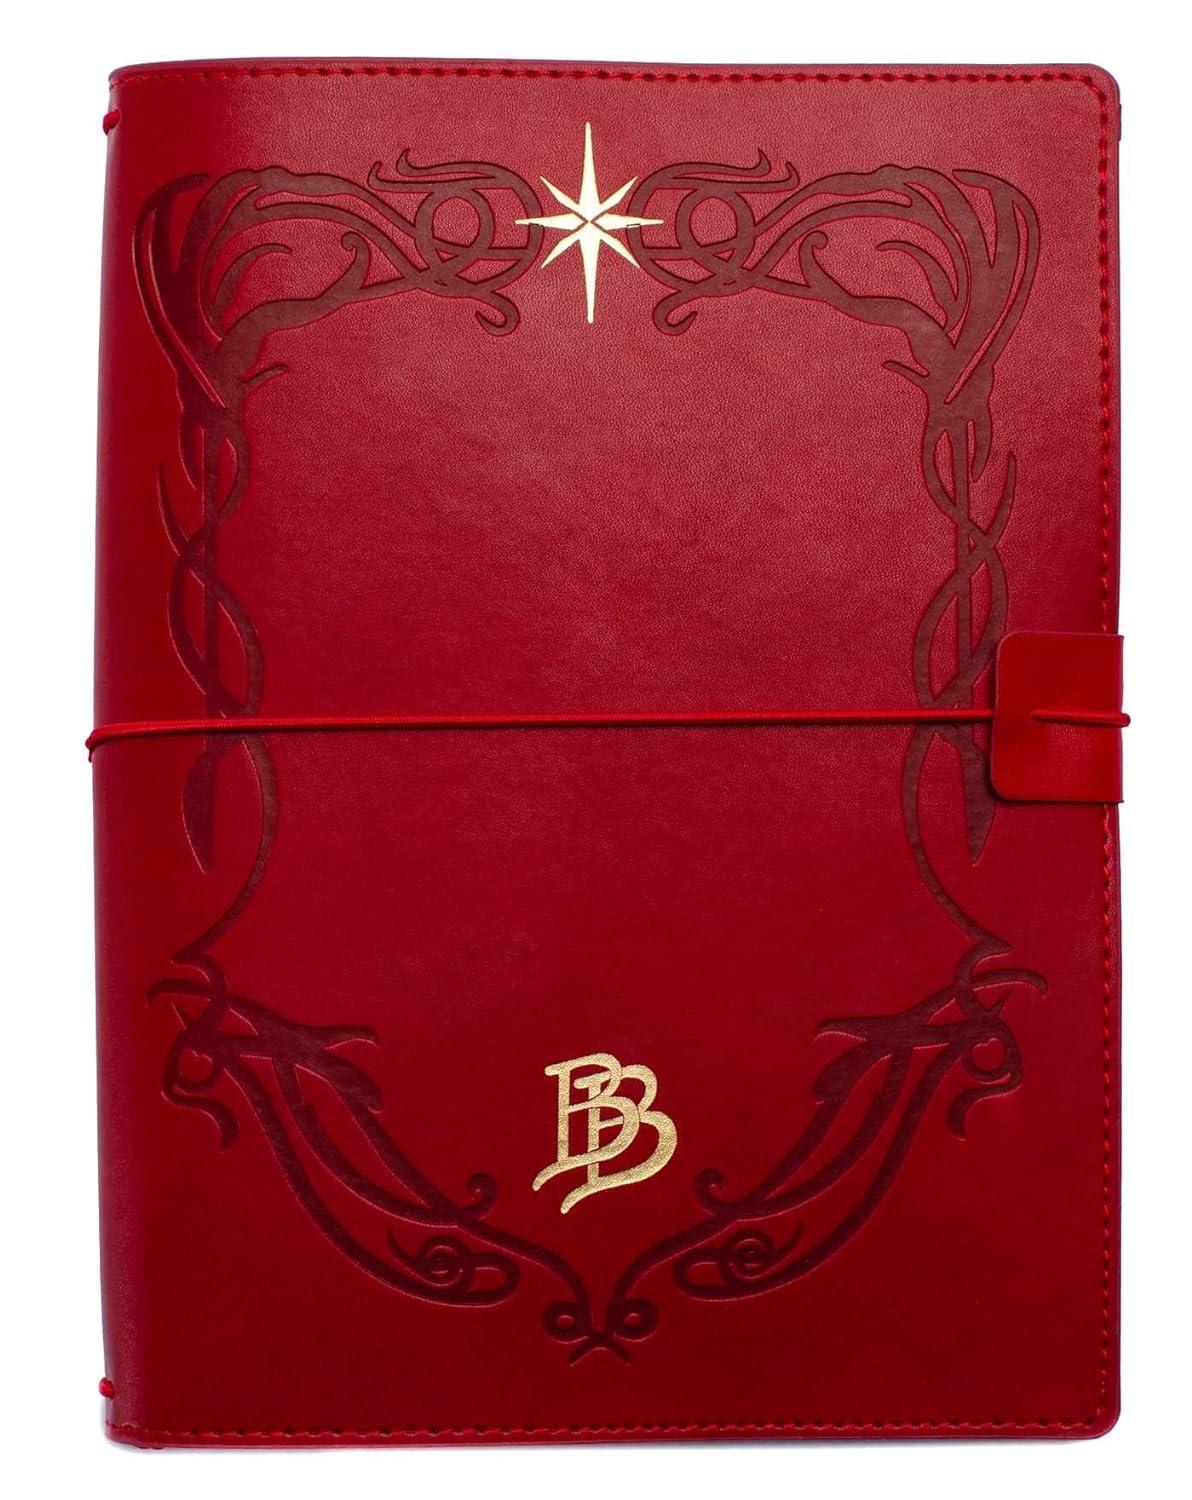 Un quaderno in pelle rossa